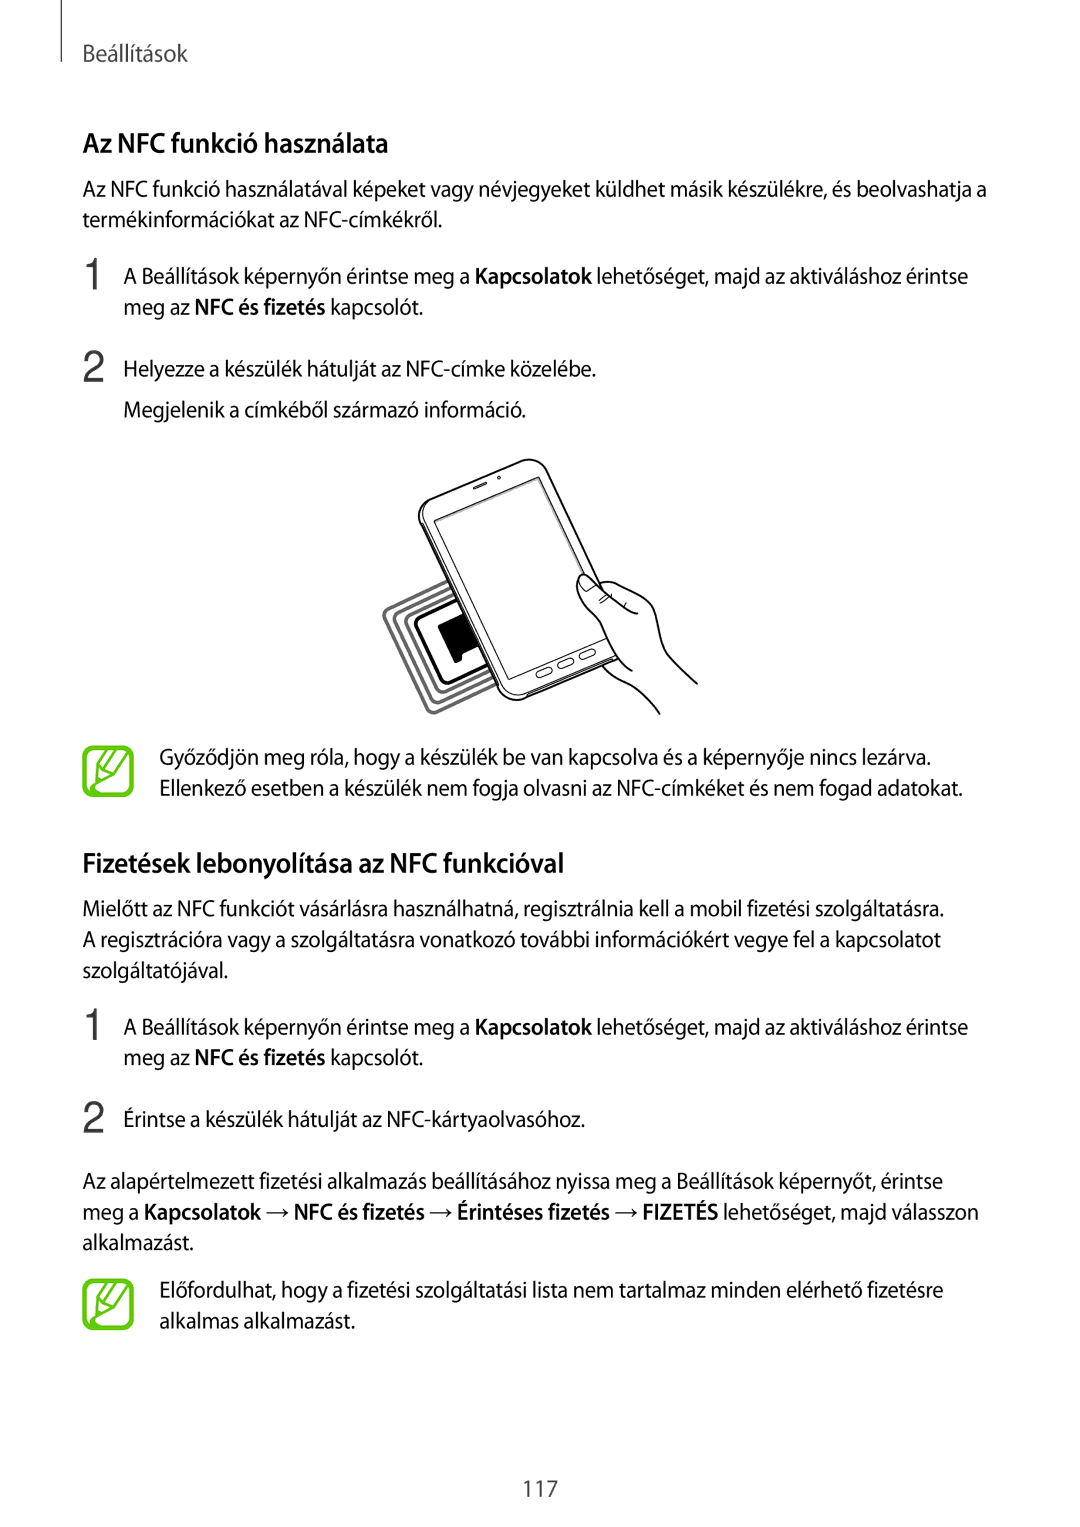 Samsung SM-T395NZKAEUR, SM-T395NZKAXEZ, SM-T395NZKAXSK Az NFC funkció használata, Fizetések lebonyolítása az NFC funkcióval 